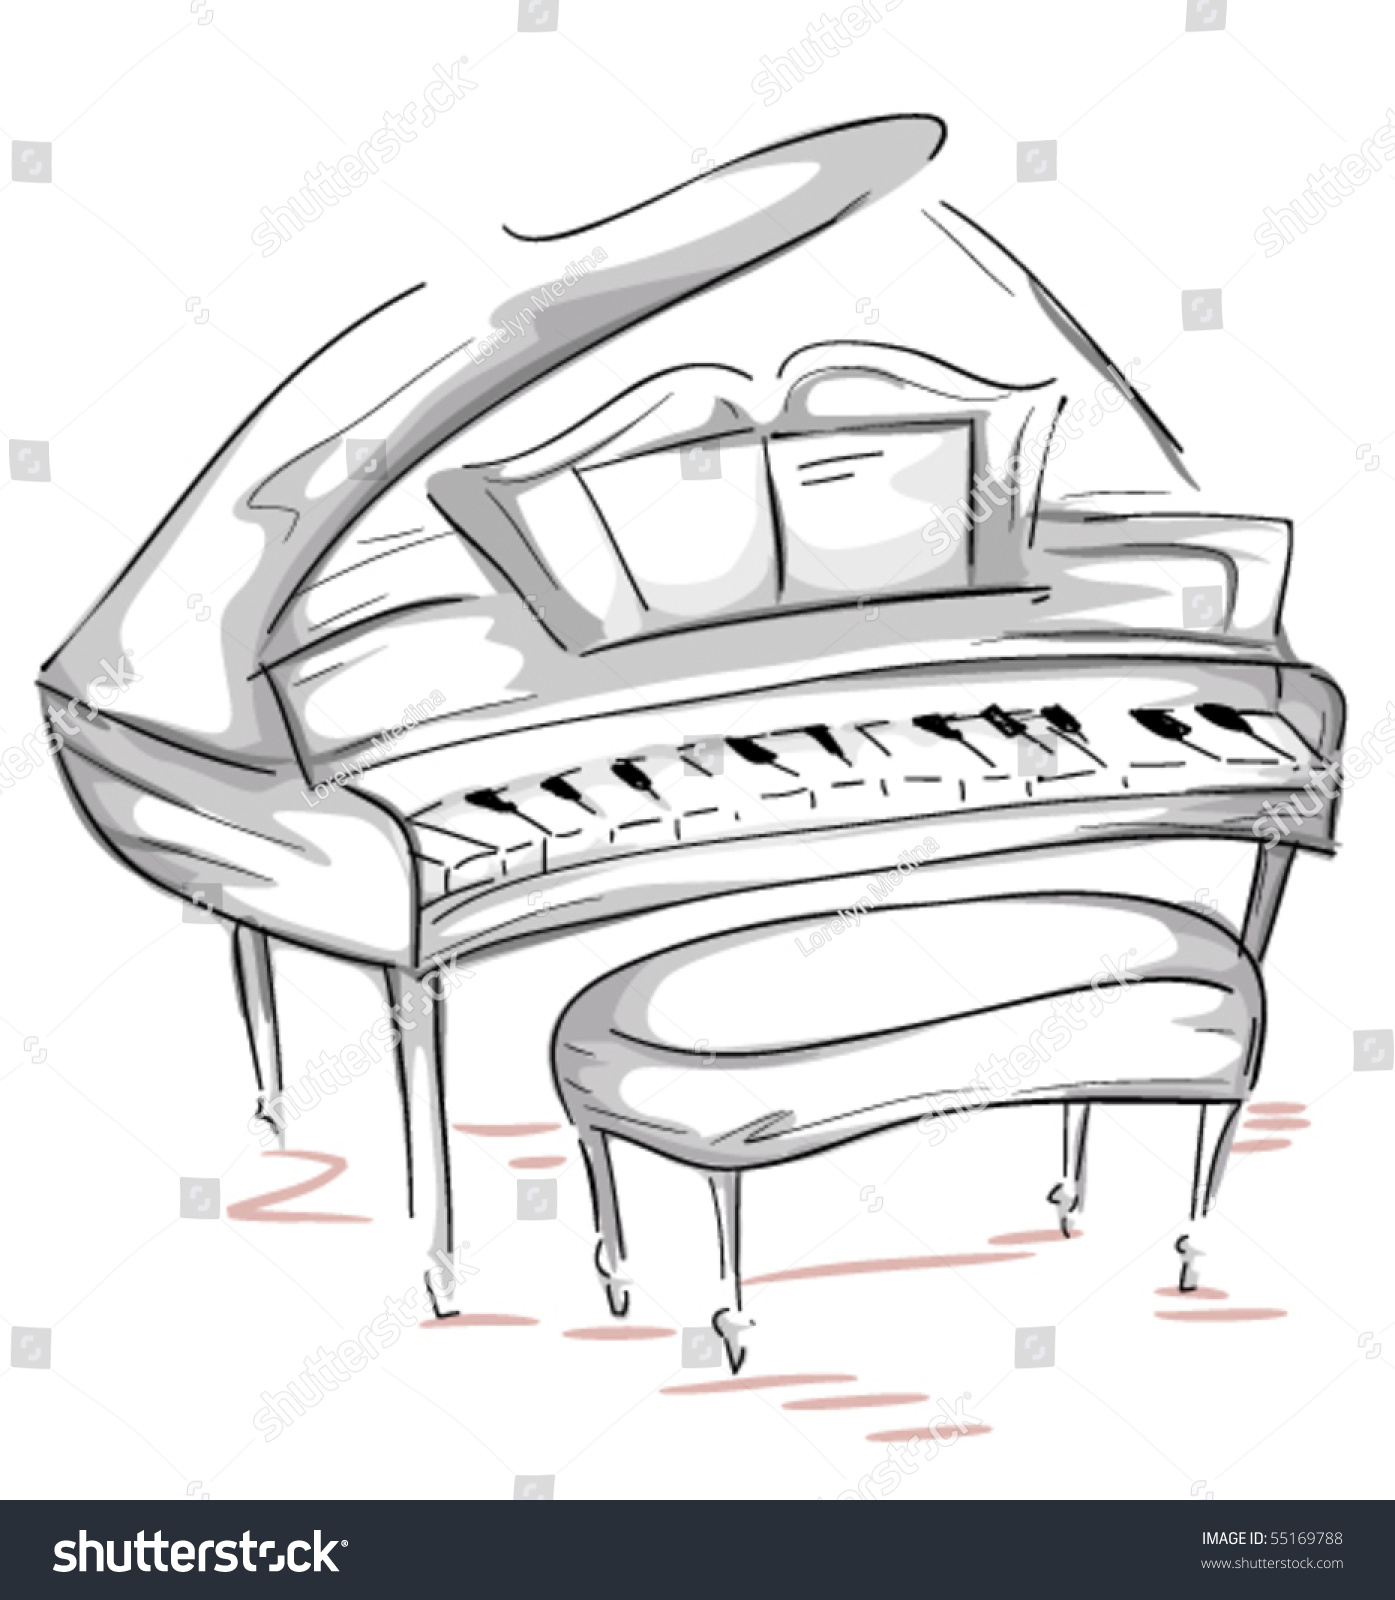 Grand Piano Sketch - Vector - 55169788 : Shutterstock